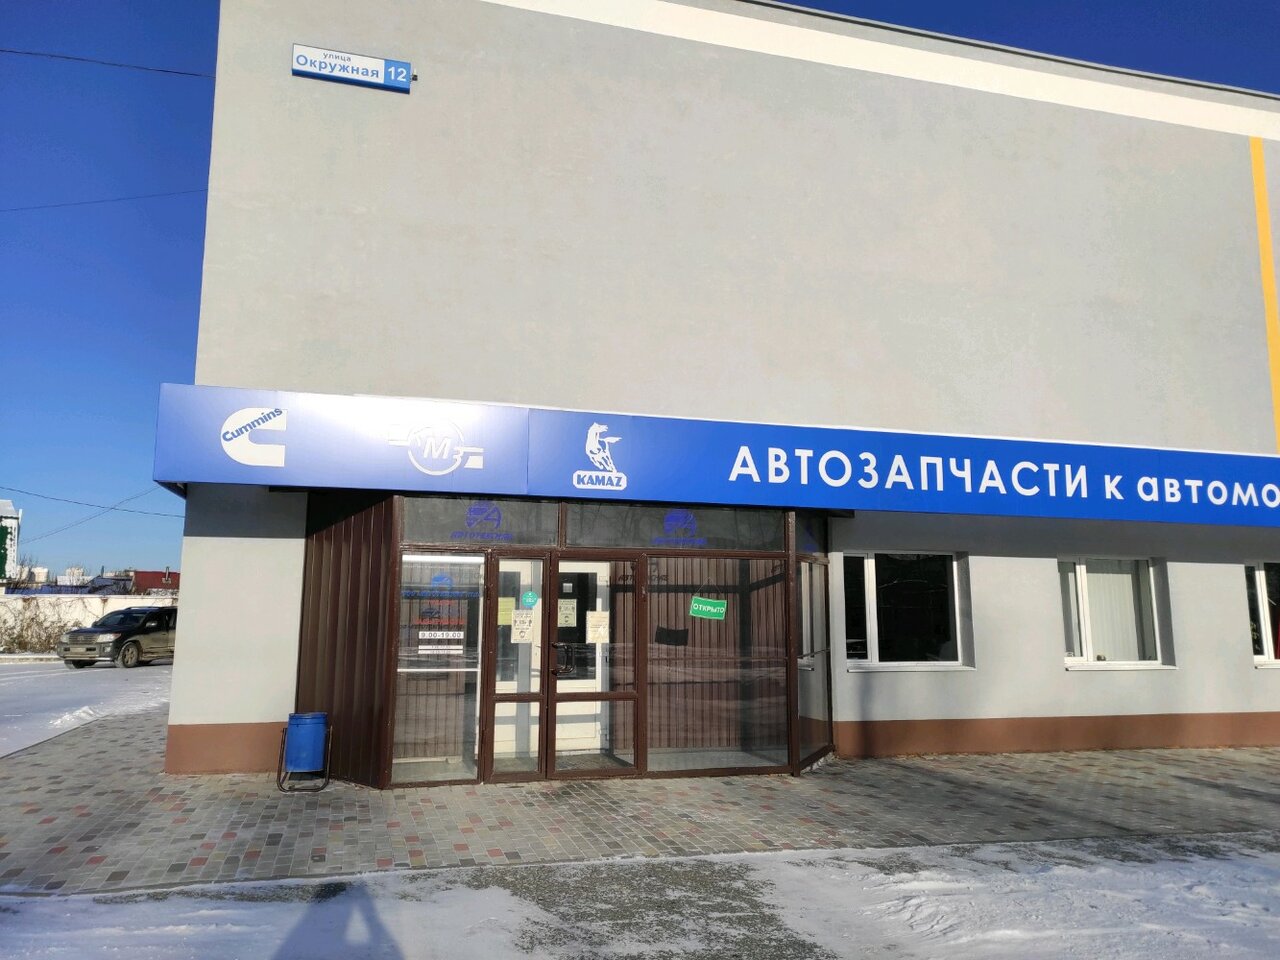 Окружная 12 Екатеринбург Магазин